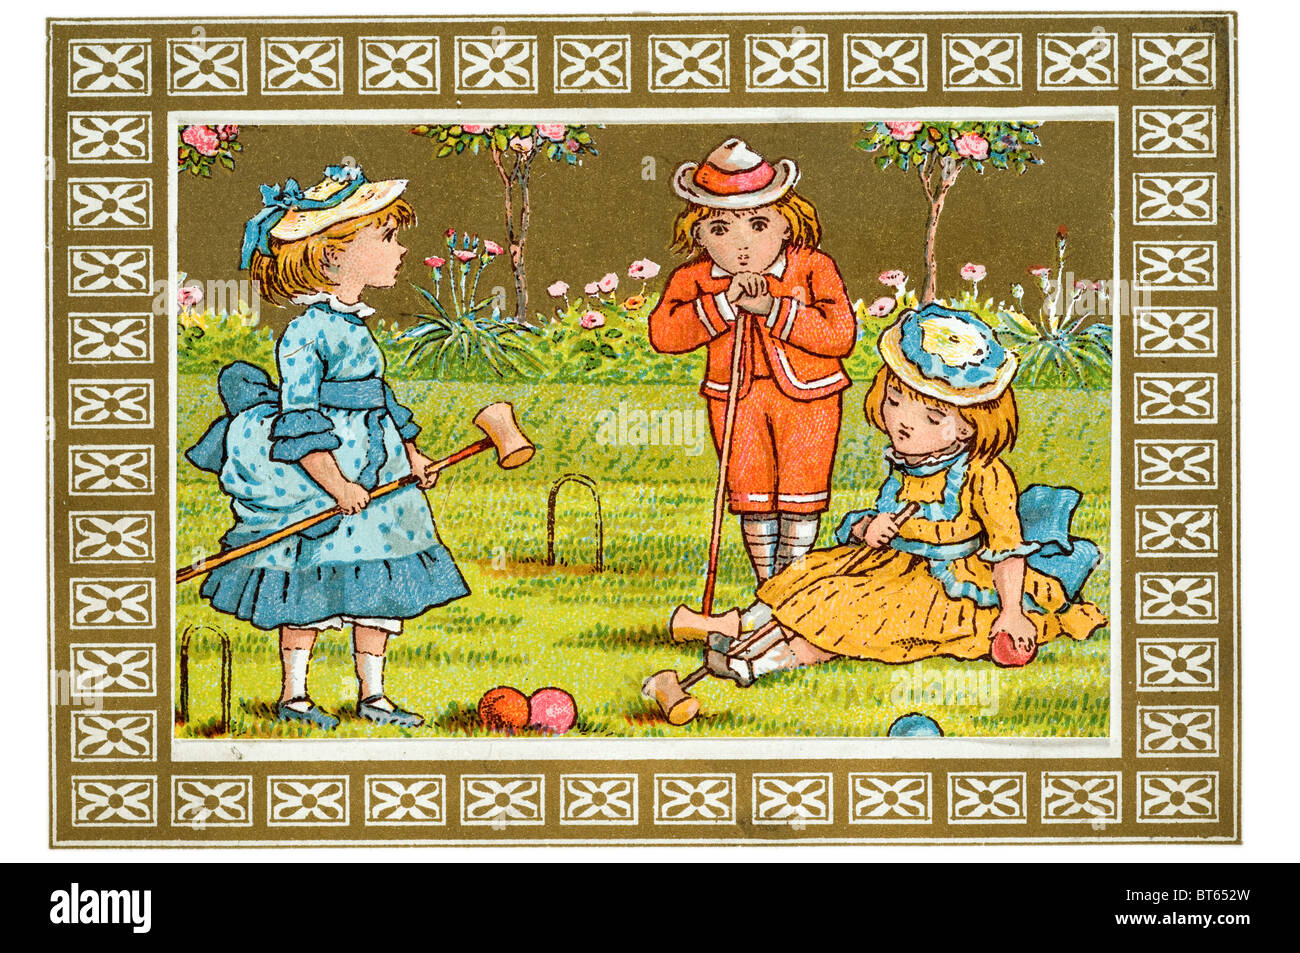 Krocket Kinderreim Mädchen junge Haube Hauben Garten singen, spielen, singen tanzen Kinder Kleider Stockfoto